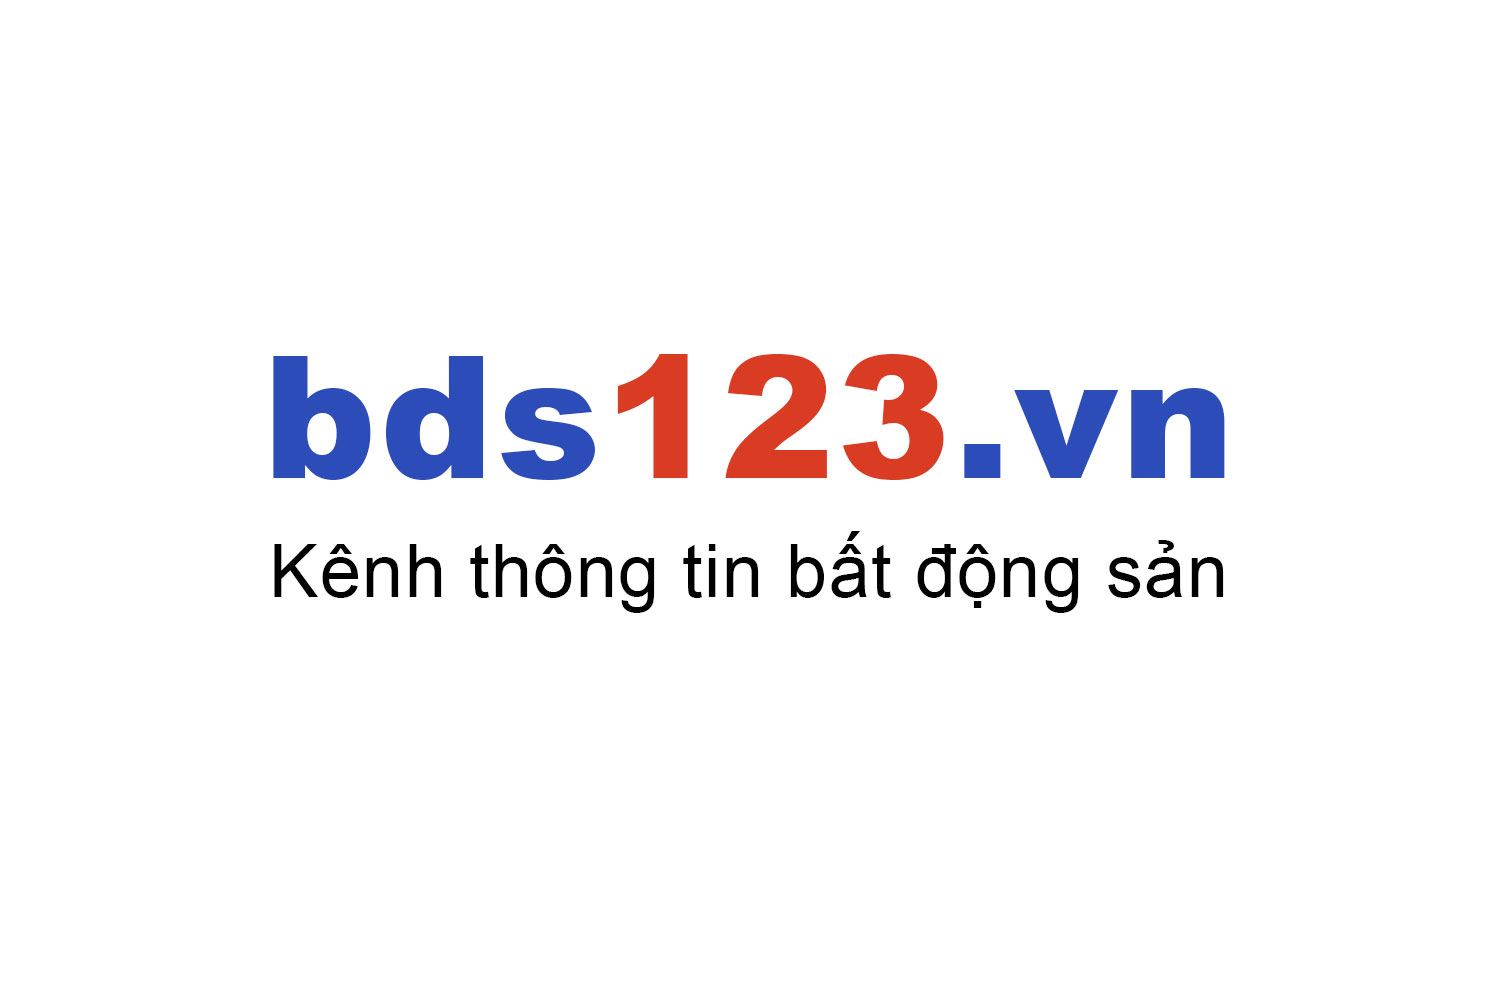 Mua bán nhà trọ Liên Chiểu ưu đãi giá tốt T7/2022 - Bds123.vn